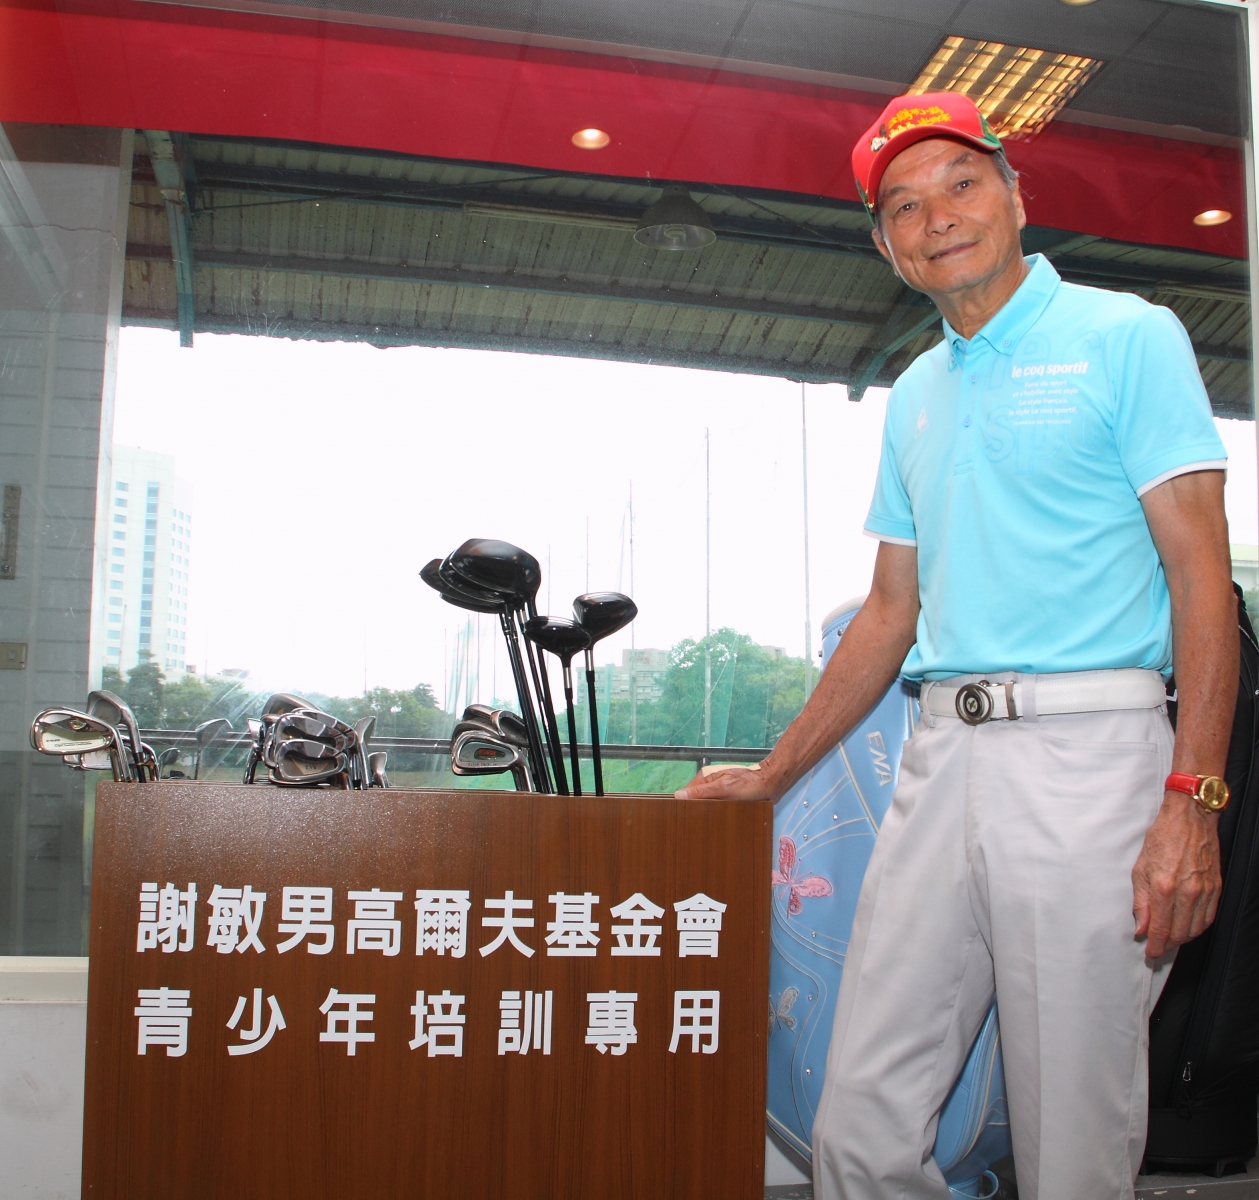 謝敏男80歲了仍然活得像一條活龍、且有意義！增進球技勤練體能，也透過基金會每年回饋高壇。